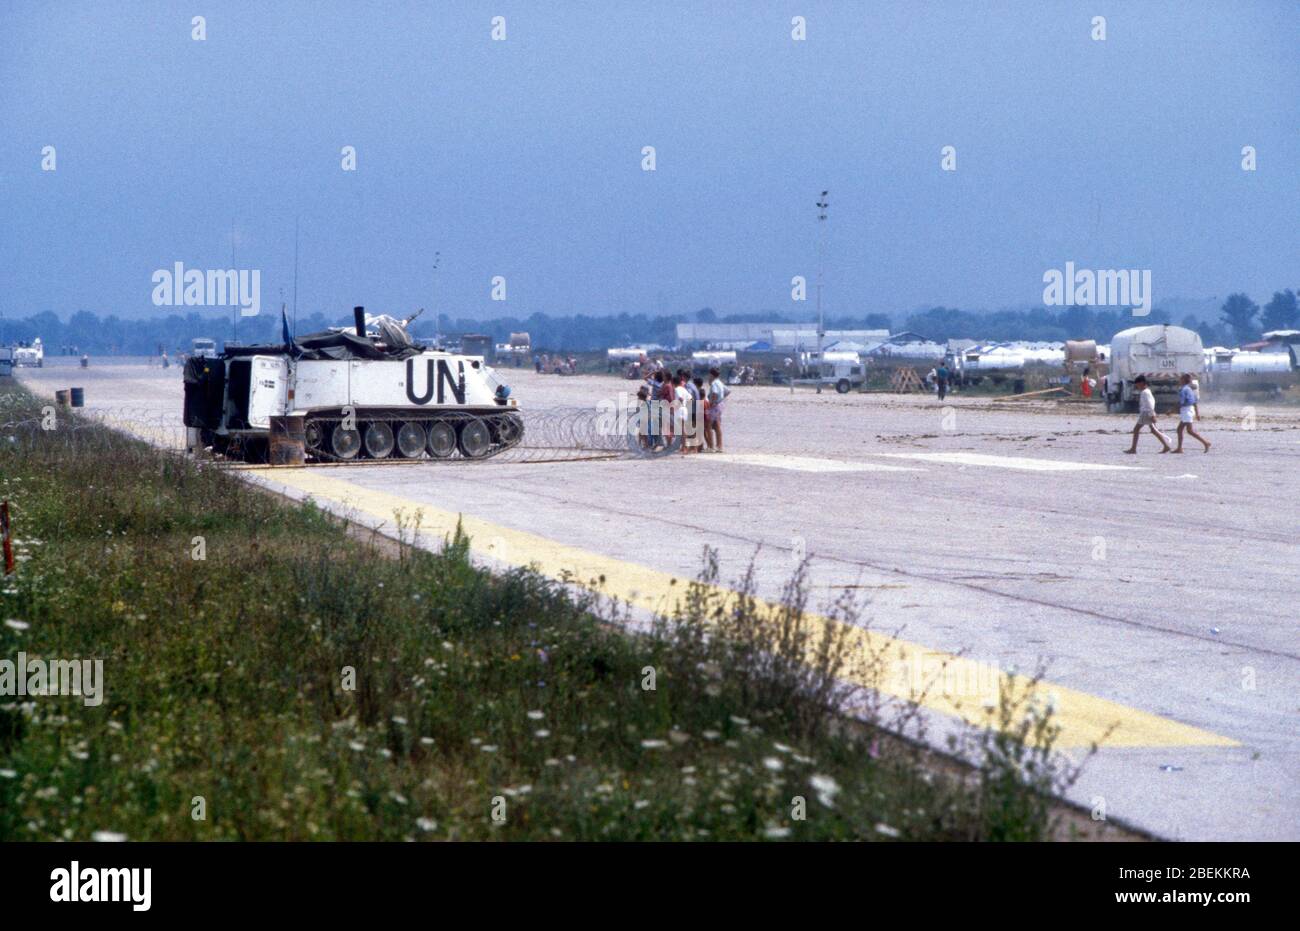 1995 Tuzla, Bosnien - UN-Panzer zum Schutz des Flugplatzes Tuzla für bosnische Muslime, die vor dem Massaker von Srebrenica während des Bosnienkrieges fliehen Stockfoto